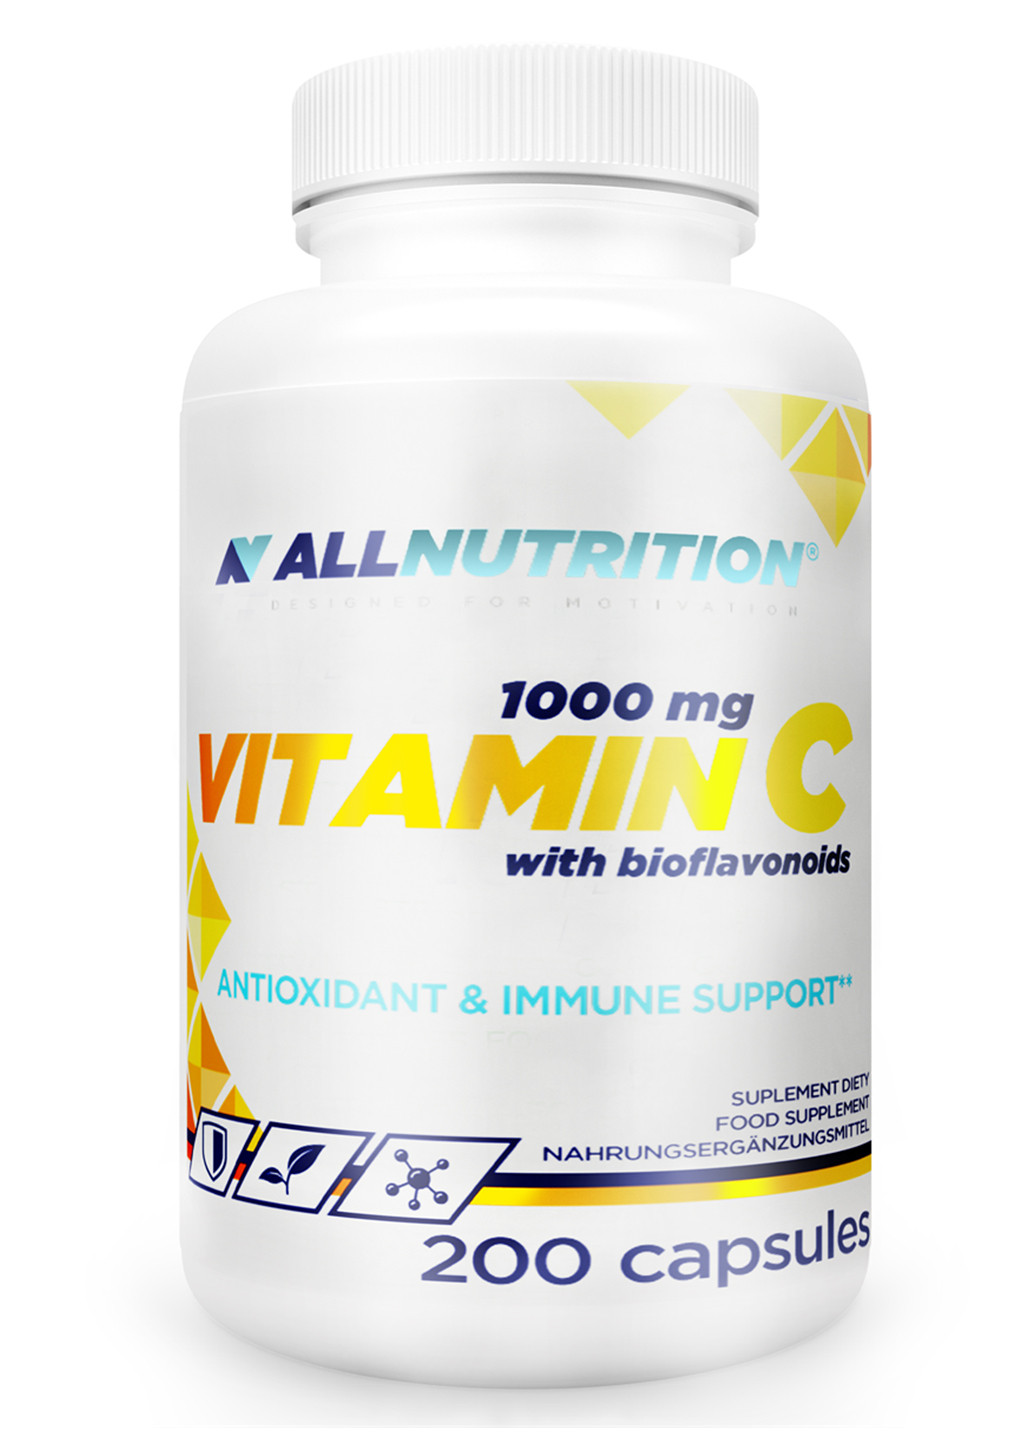 Витамин С для повышения иммунитета Vitamin C With bioflavonoids 1000mg - 200caps Allnutrition (244701412)